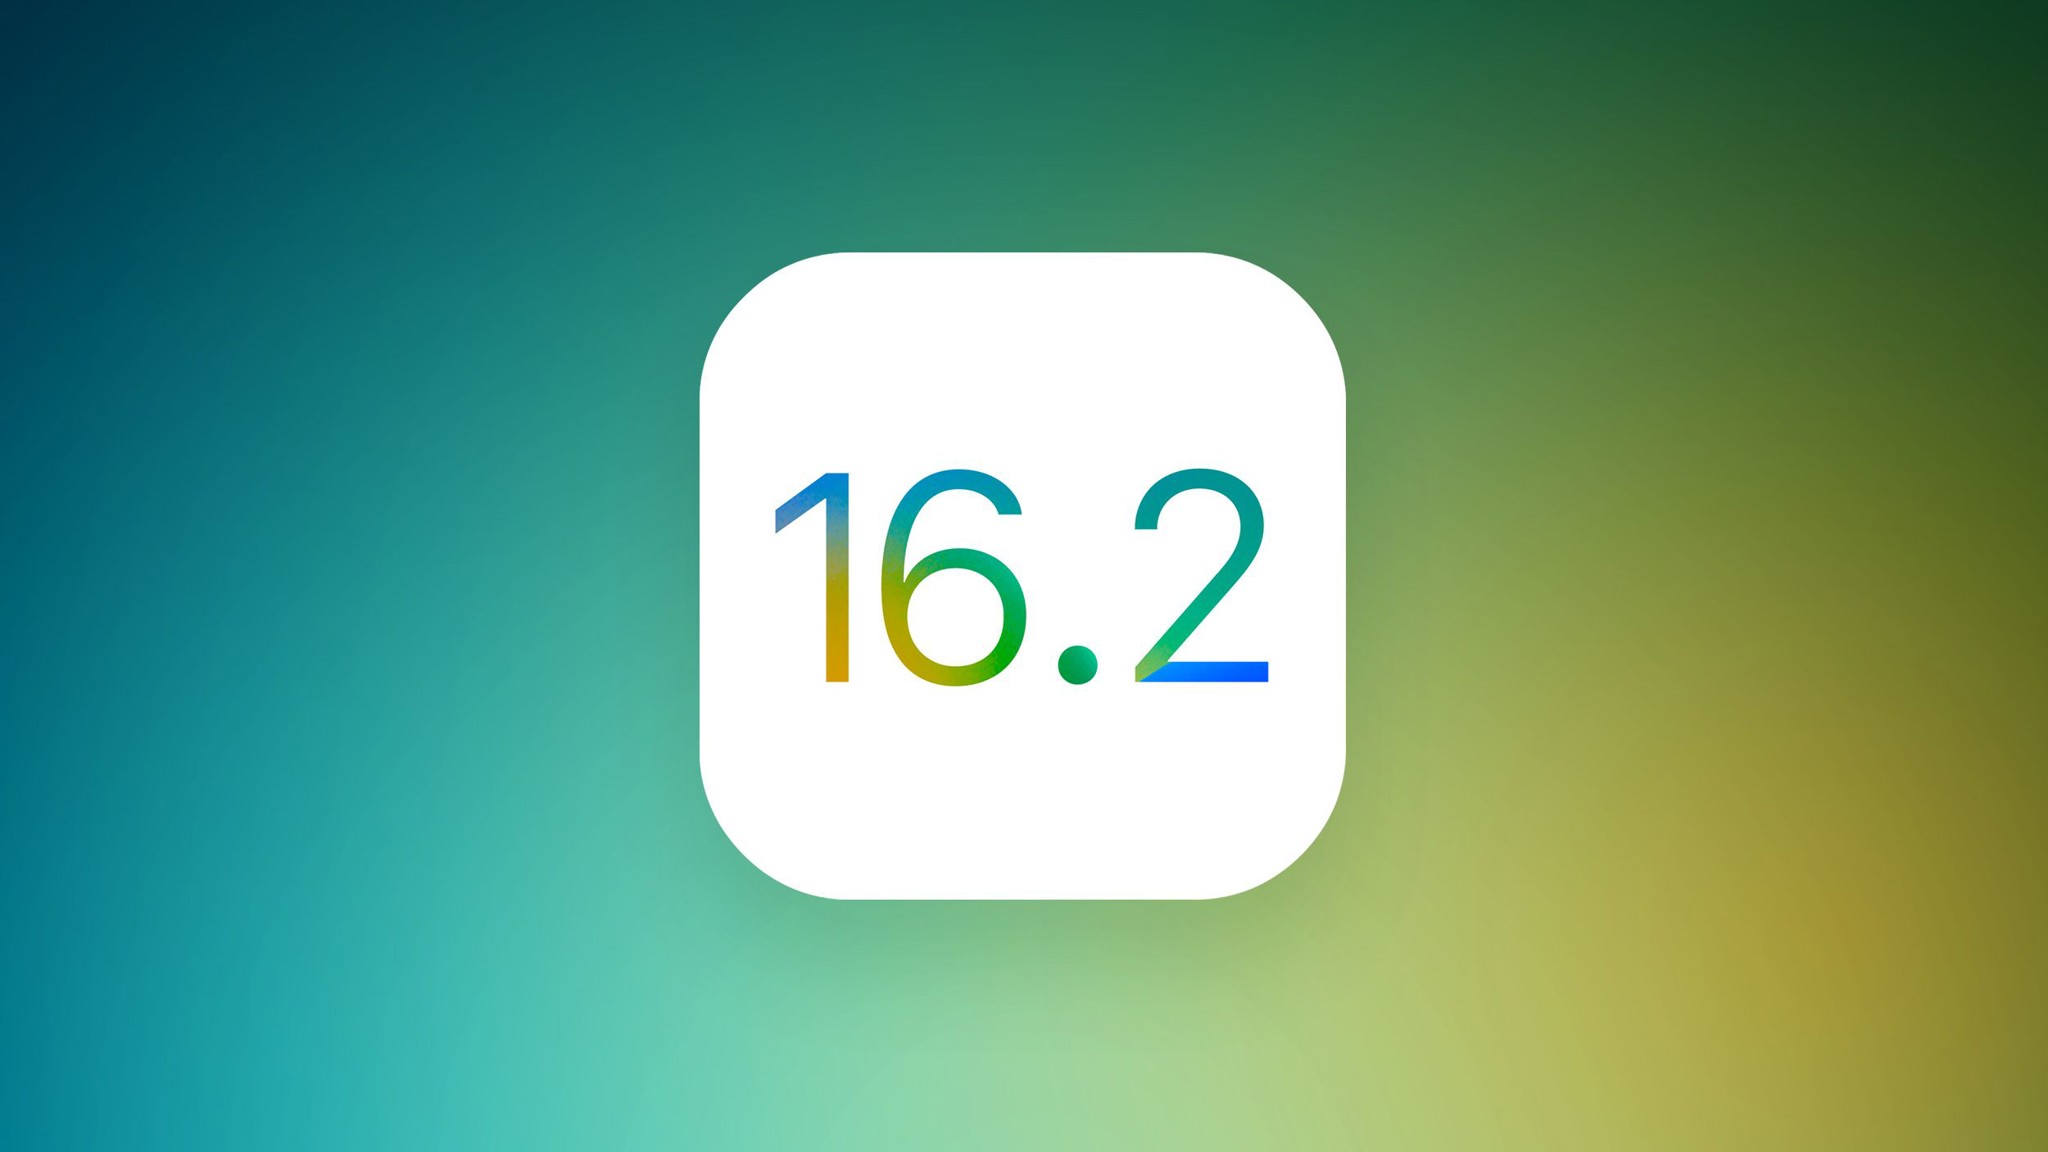 Apple phát hành iOS 16.2 chính thức với nhiều thay đổi.